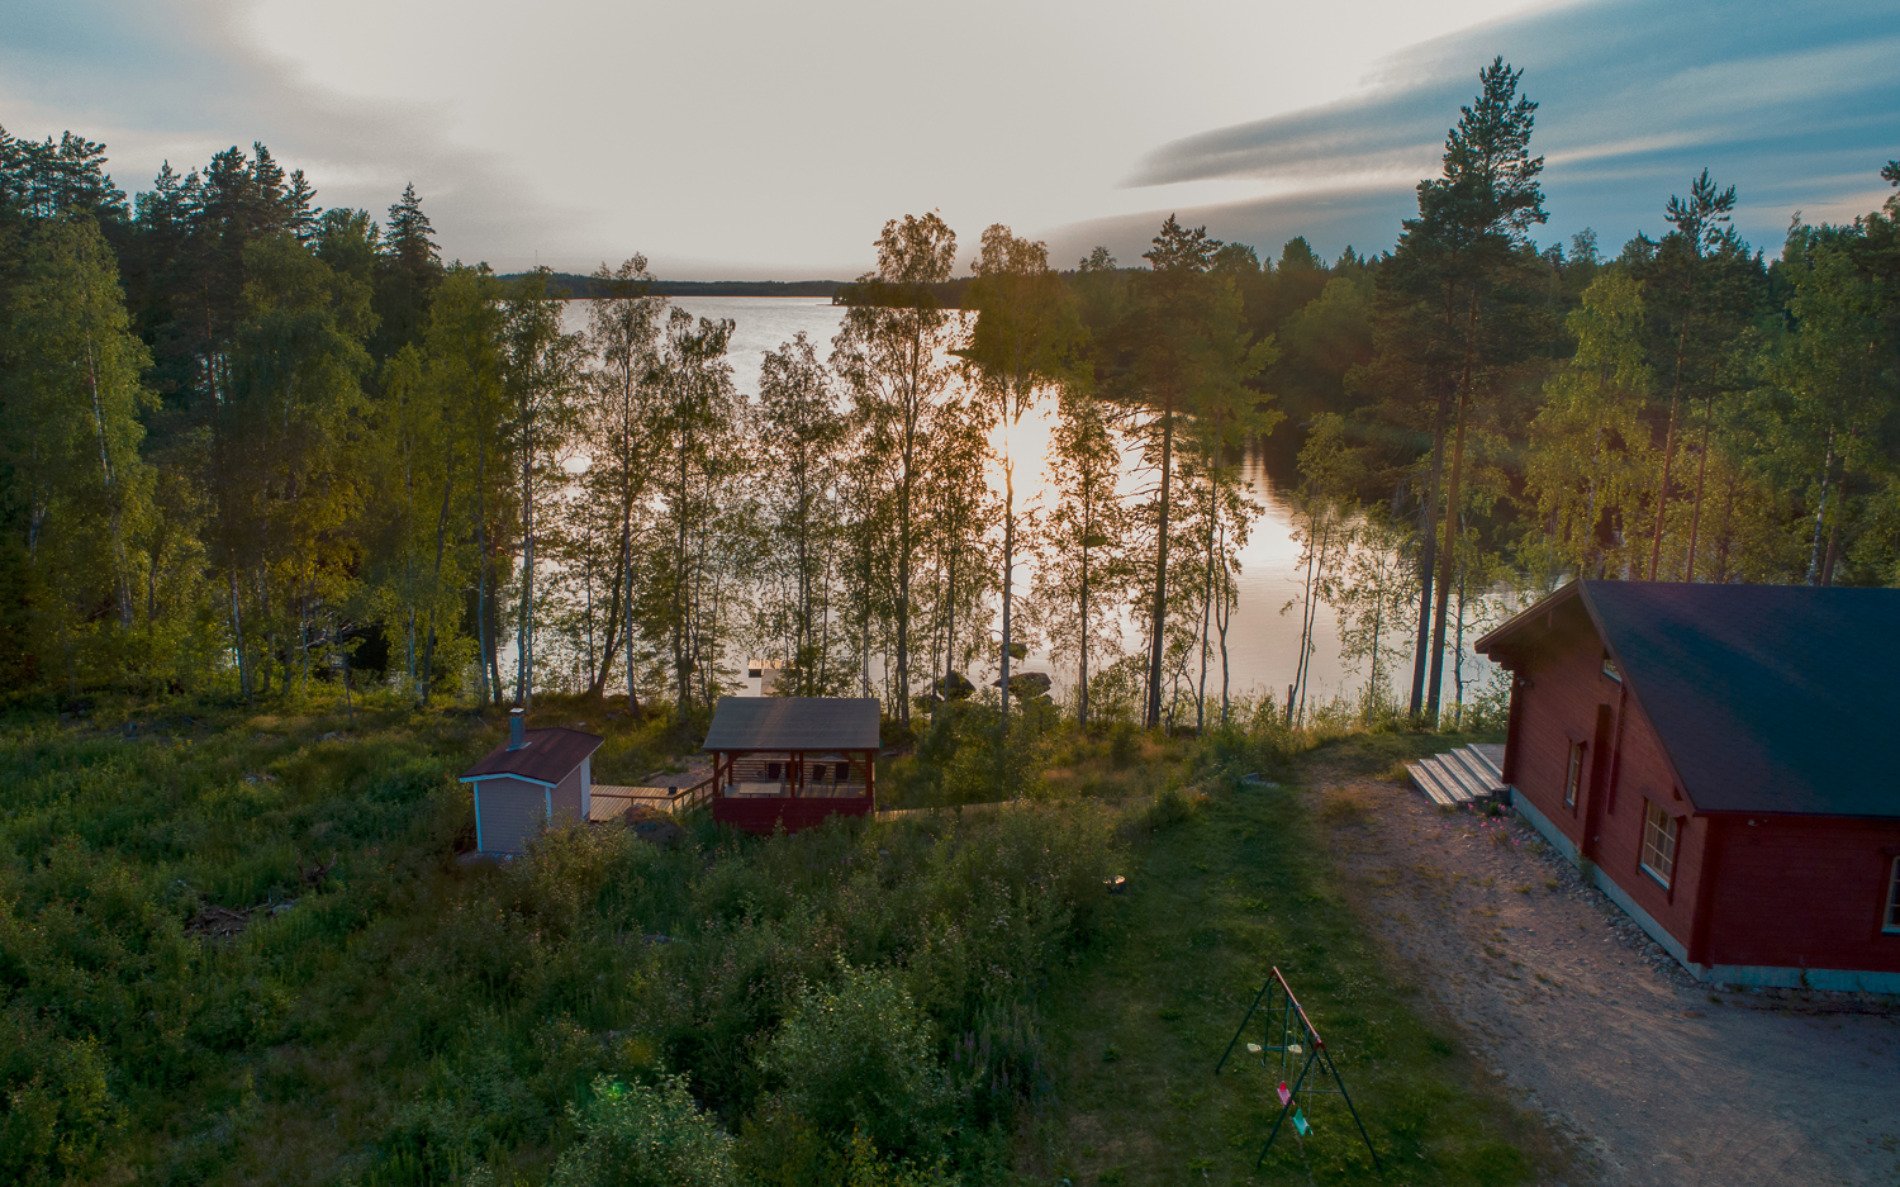 Rautjärvi là một thị trấn nhỏ yên bình ở phía đông Phần Lan